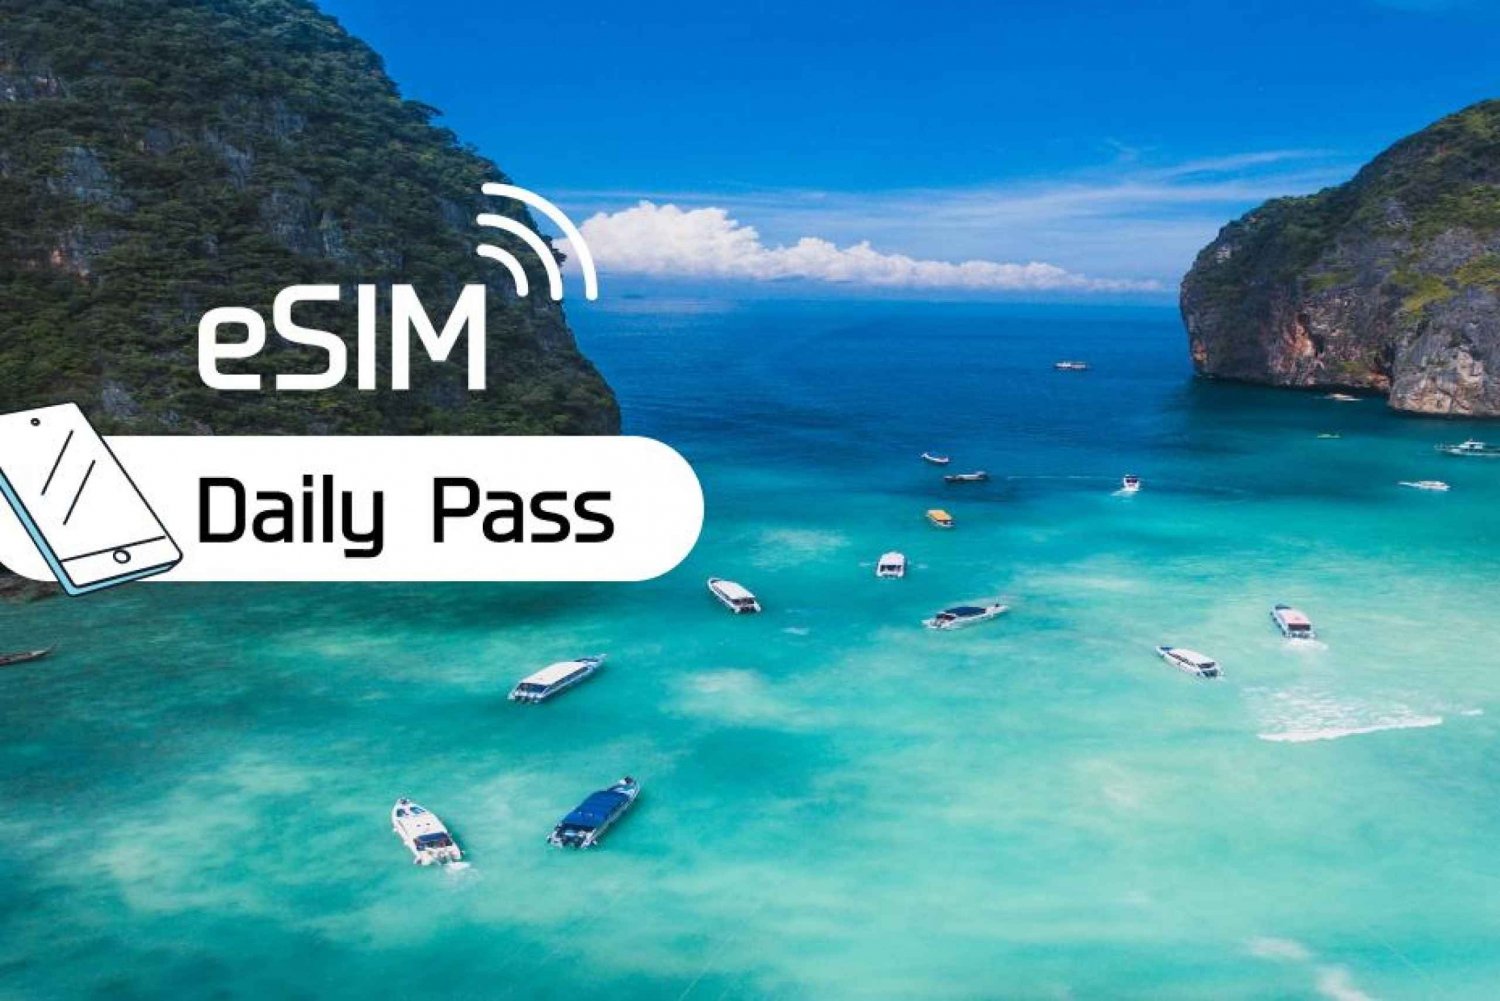 Thailandia: piano giornaliero dati mobili in roaming eSim (3-30 giorni)